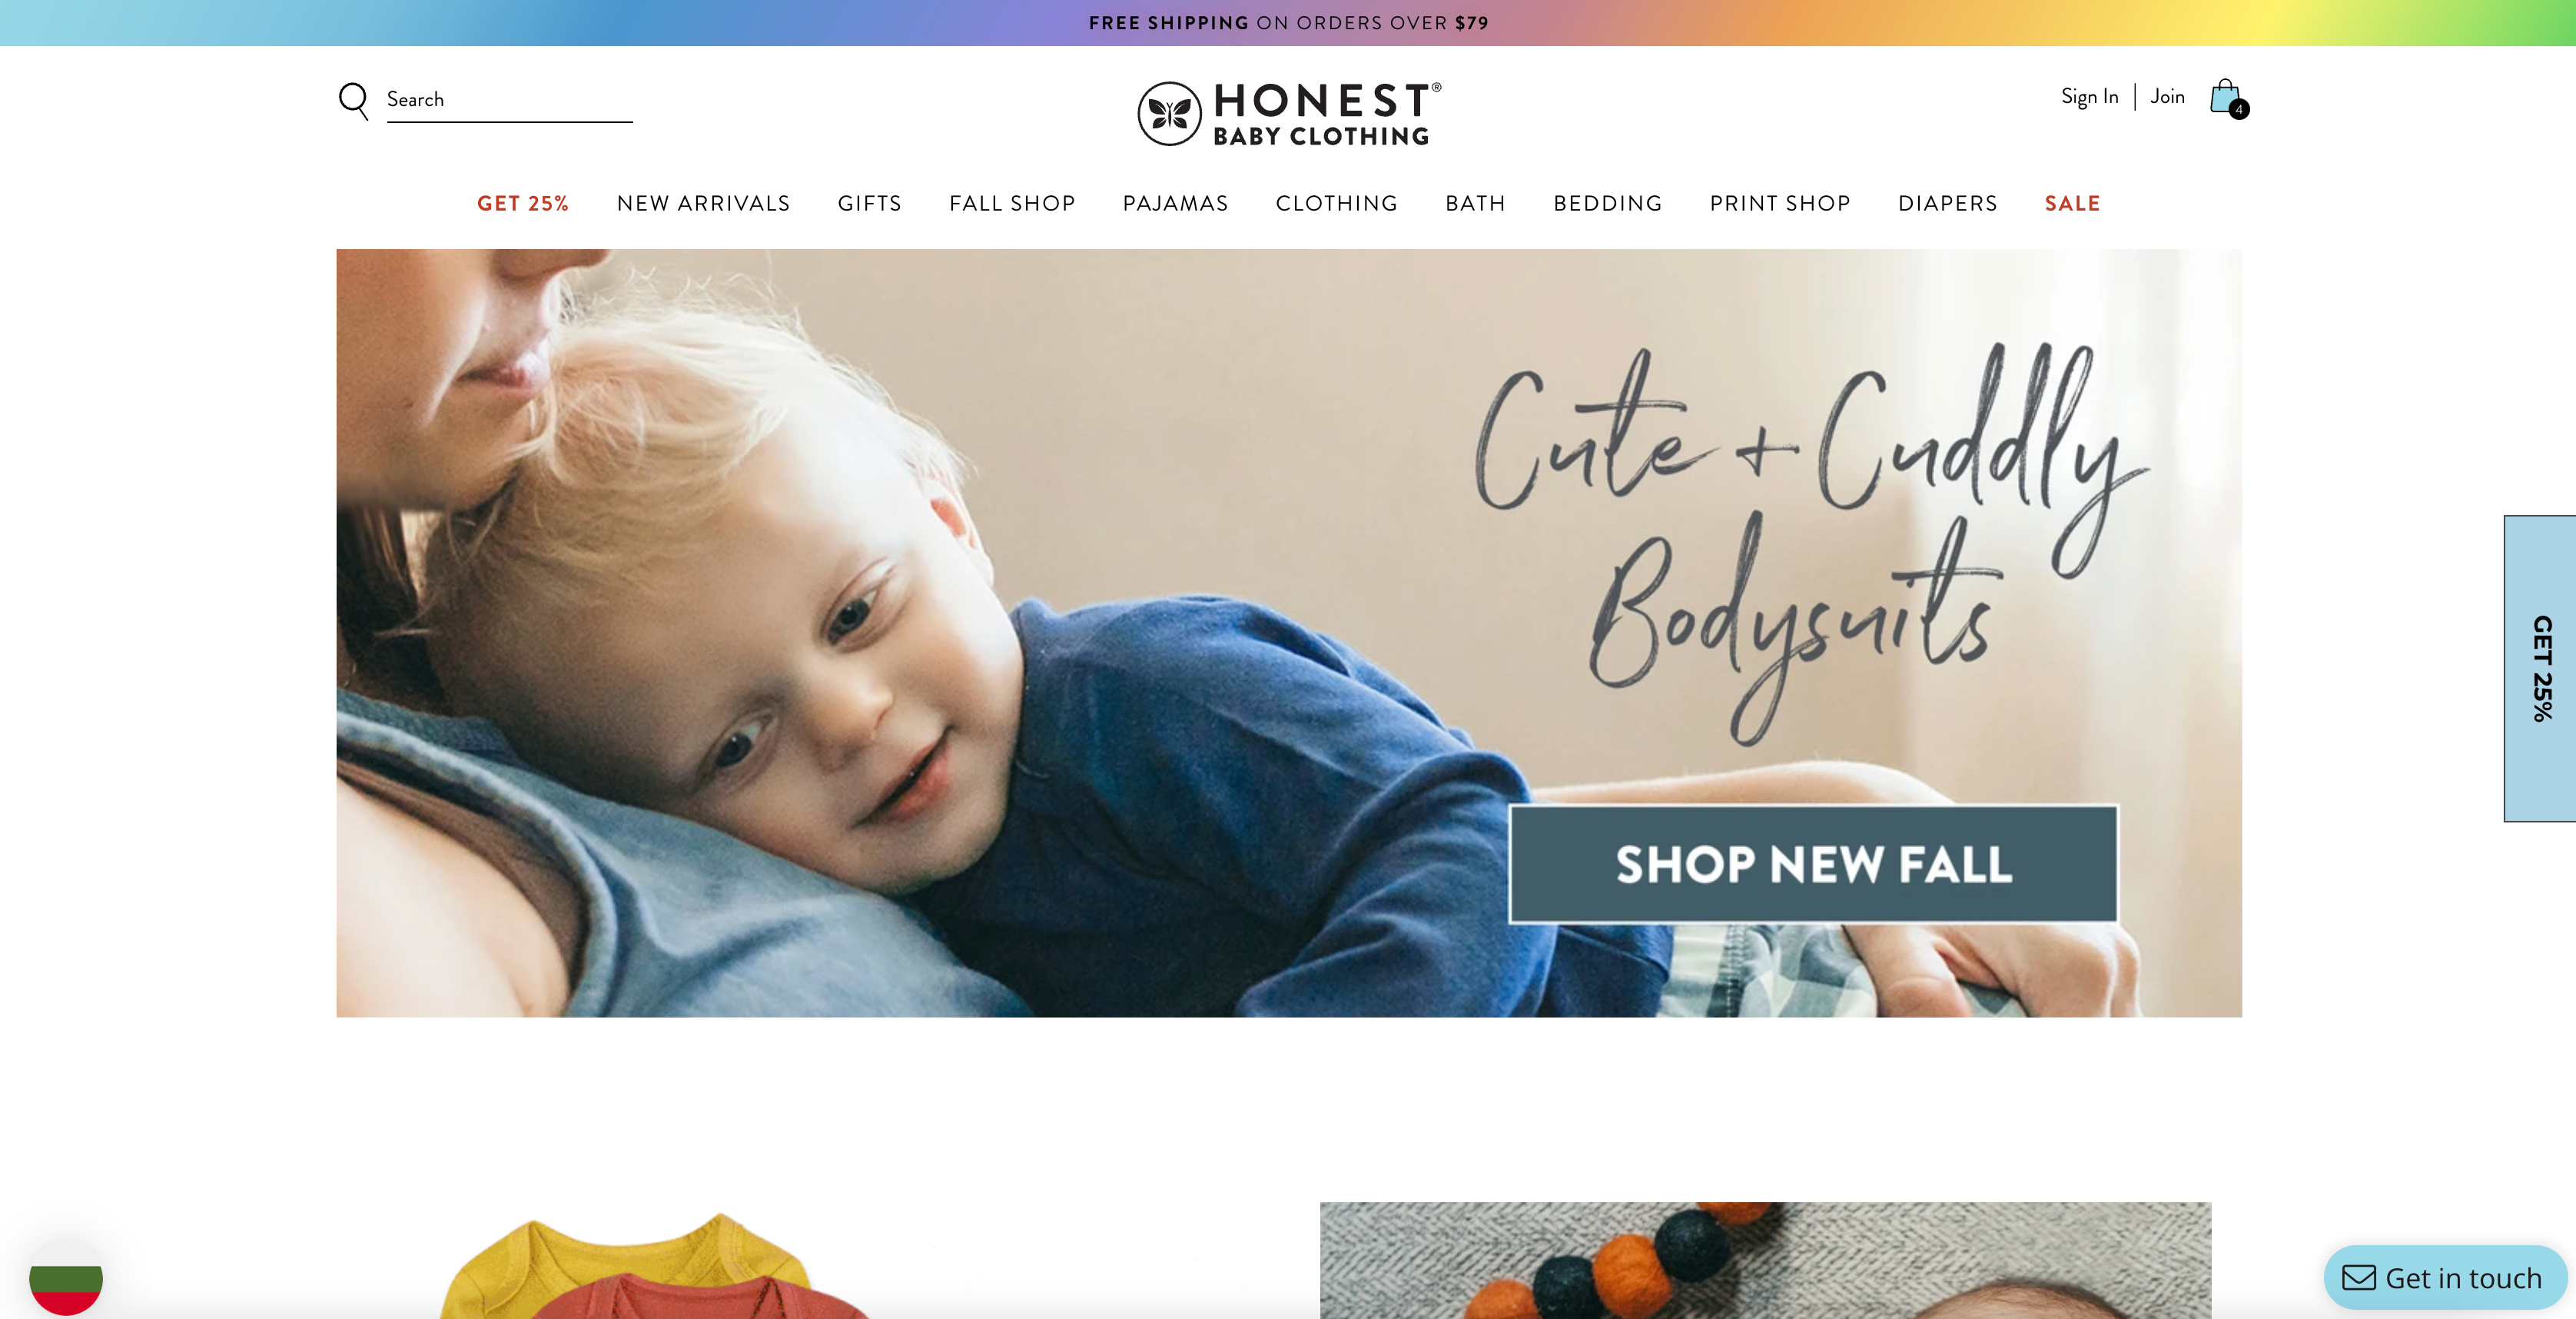 Honest Baby Clothing's Hero in Homepage